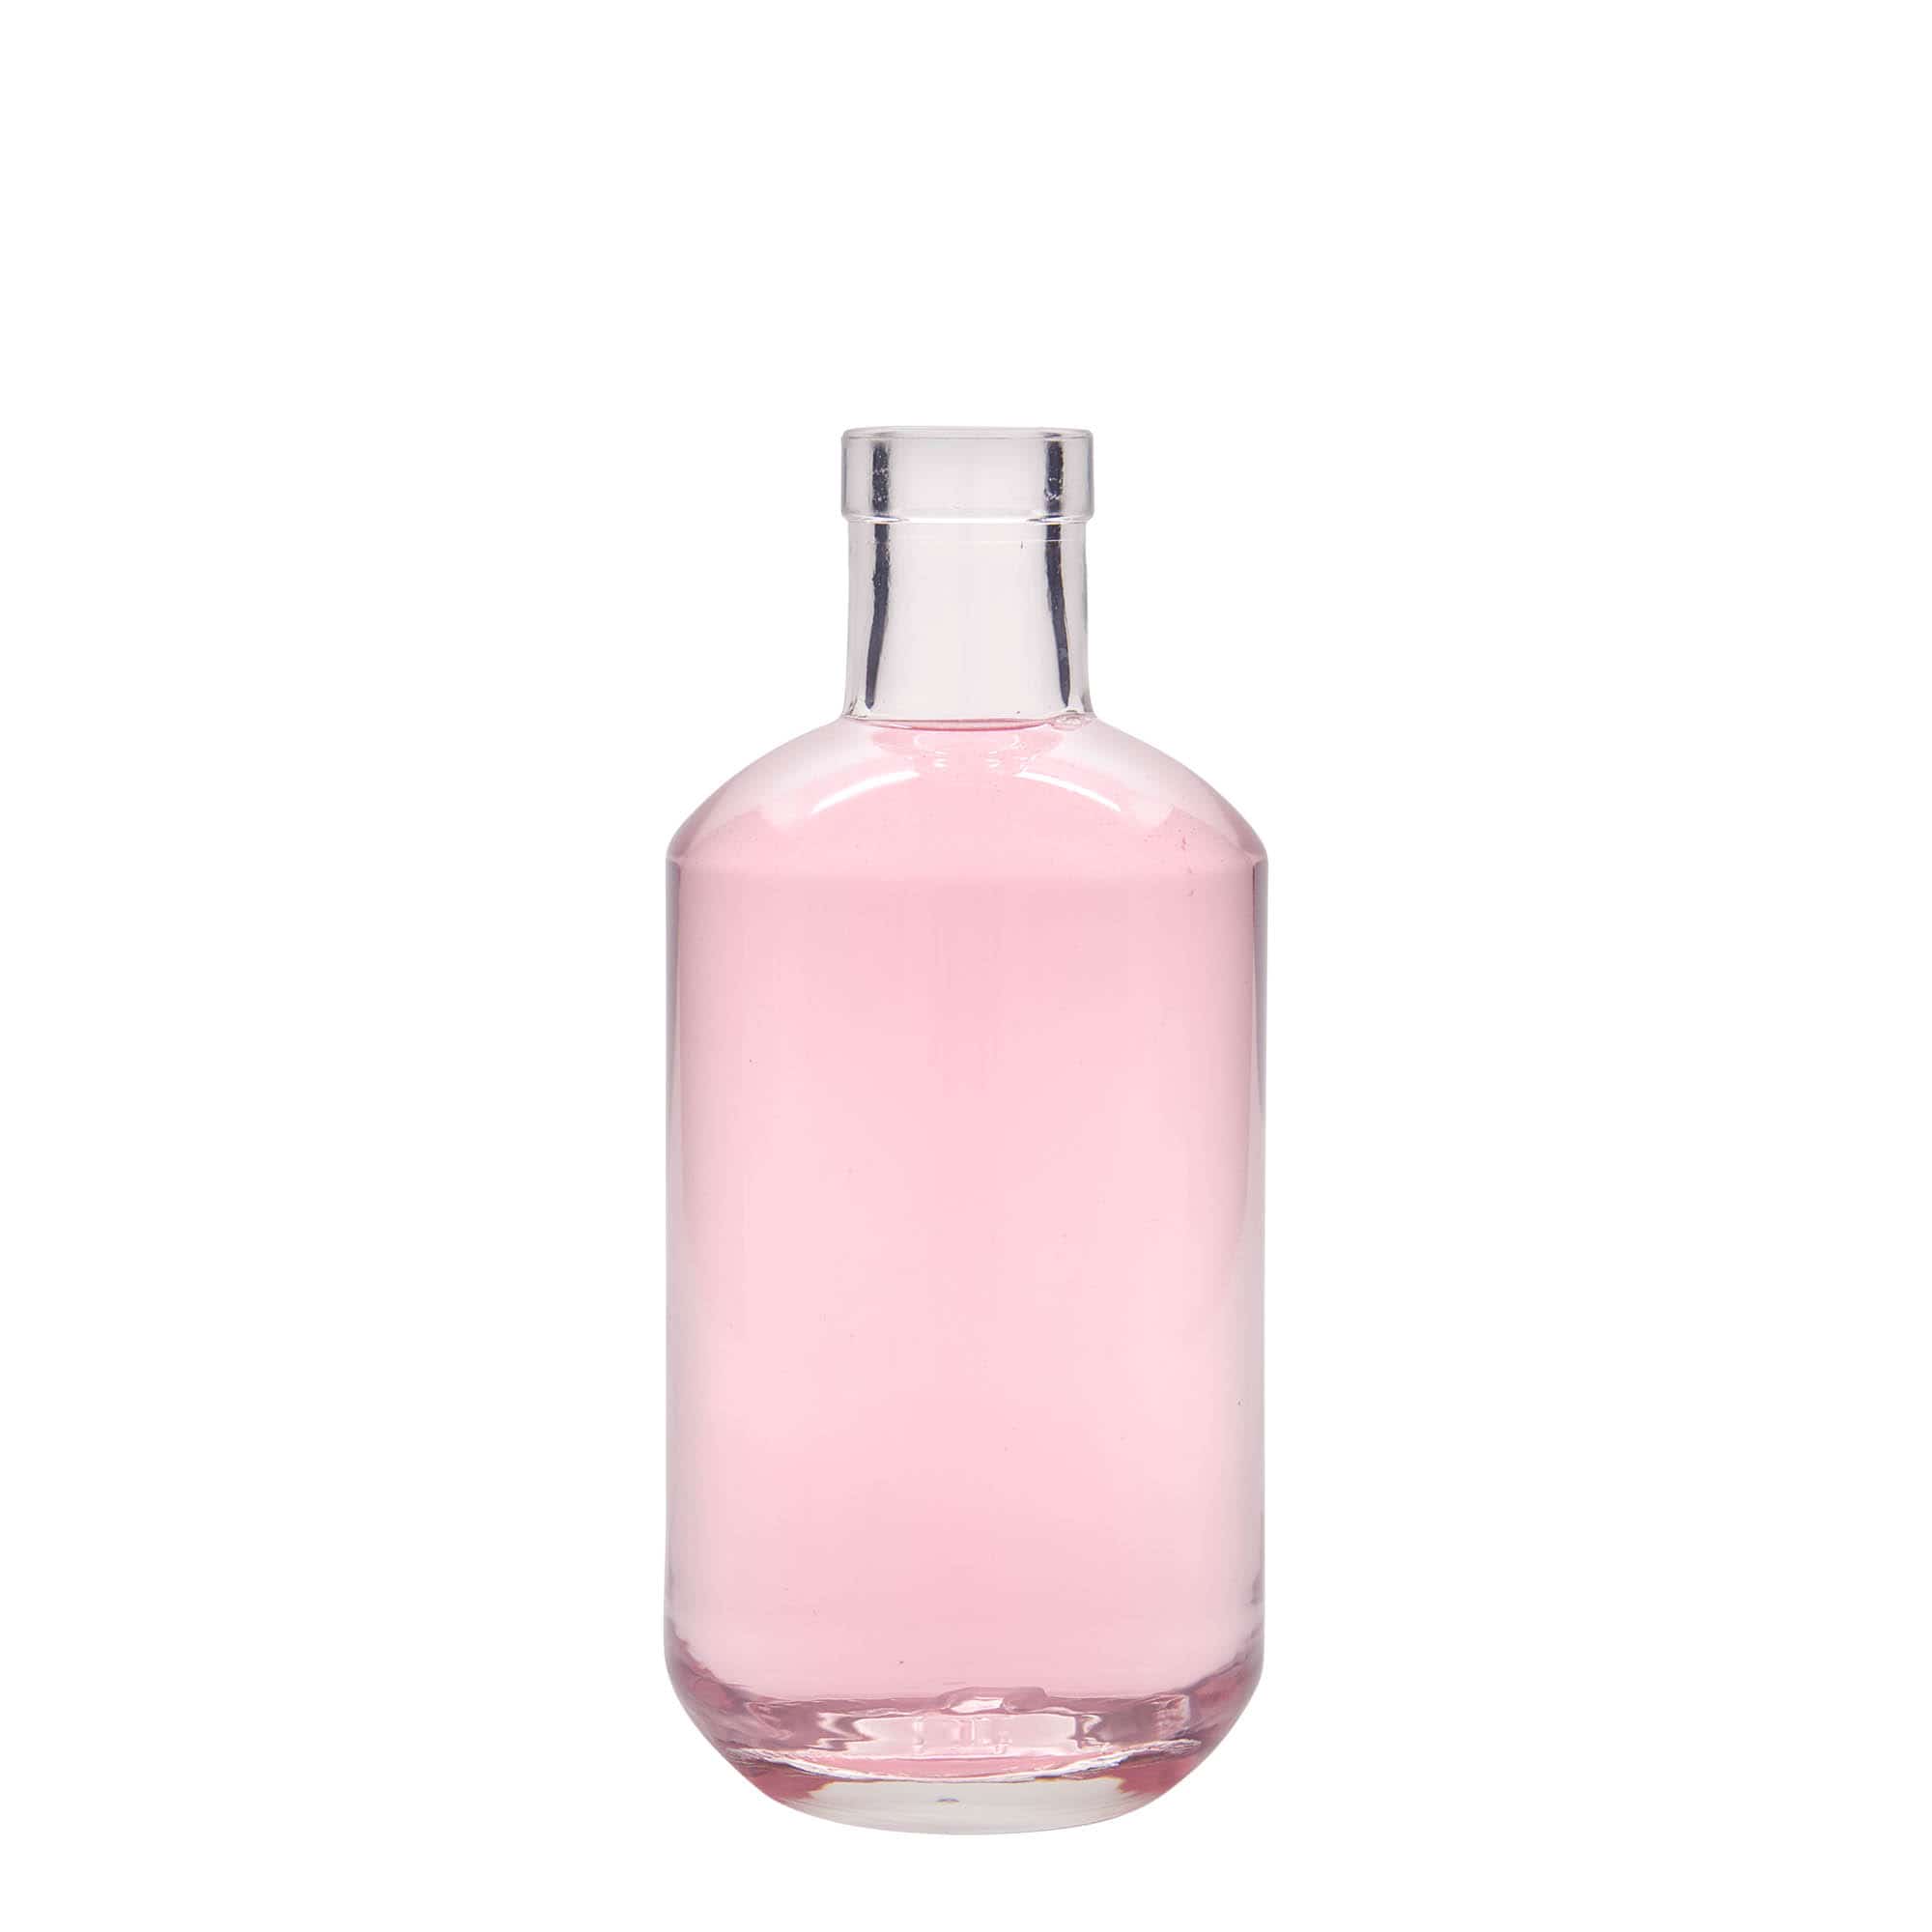 Botella de vidrio 'Viena' de 500 ml, boca: corcho